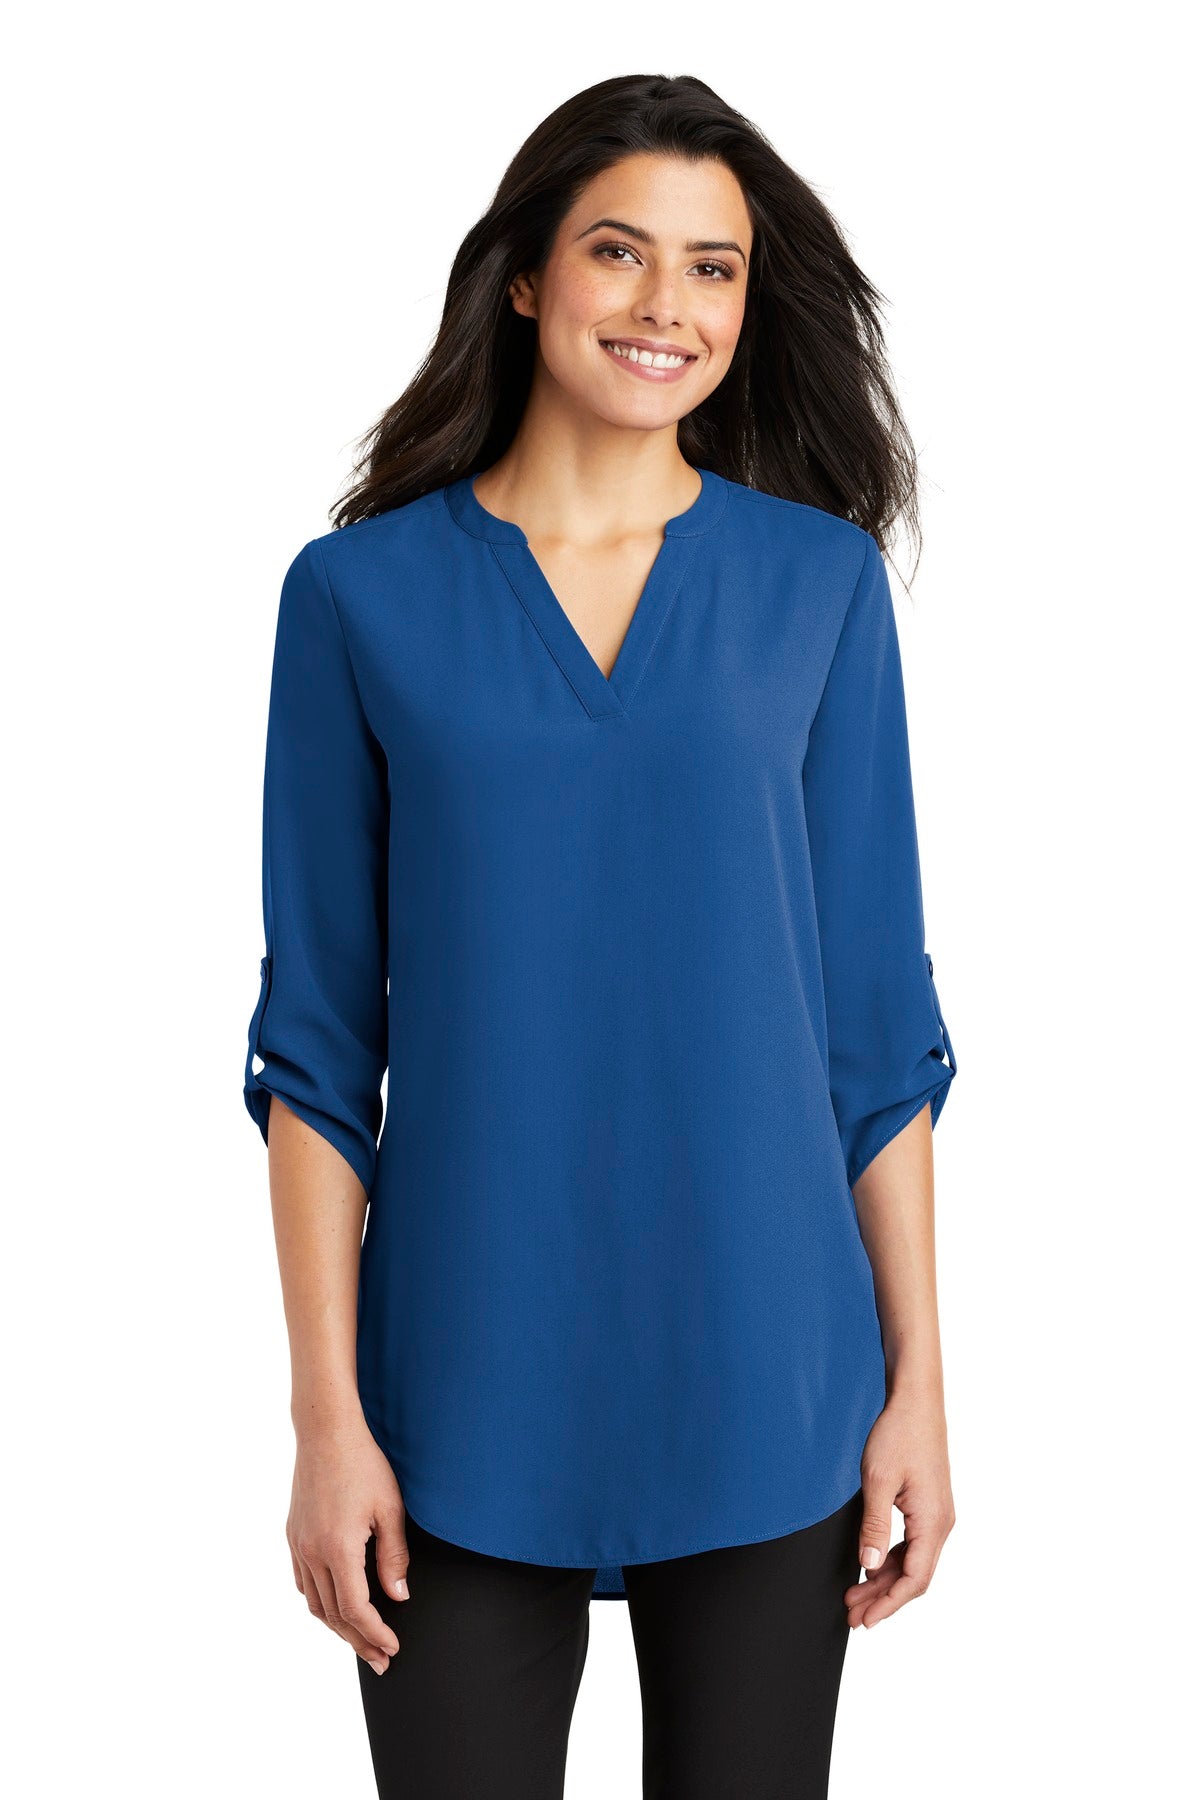 Port Authority® Ladies 3/4-Sleeve Tunic Blouse. LW701